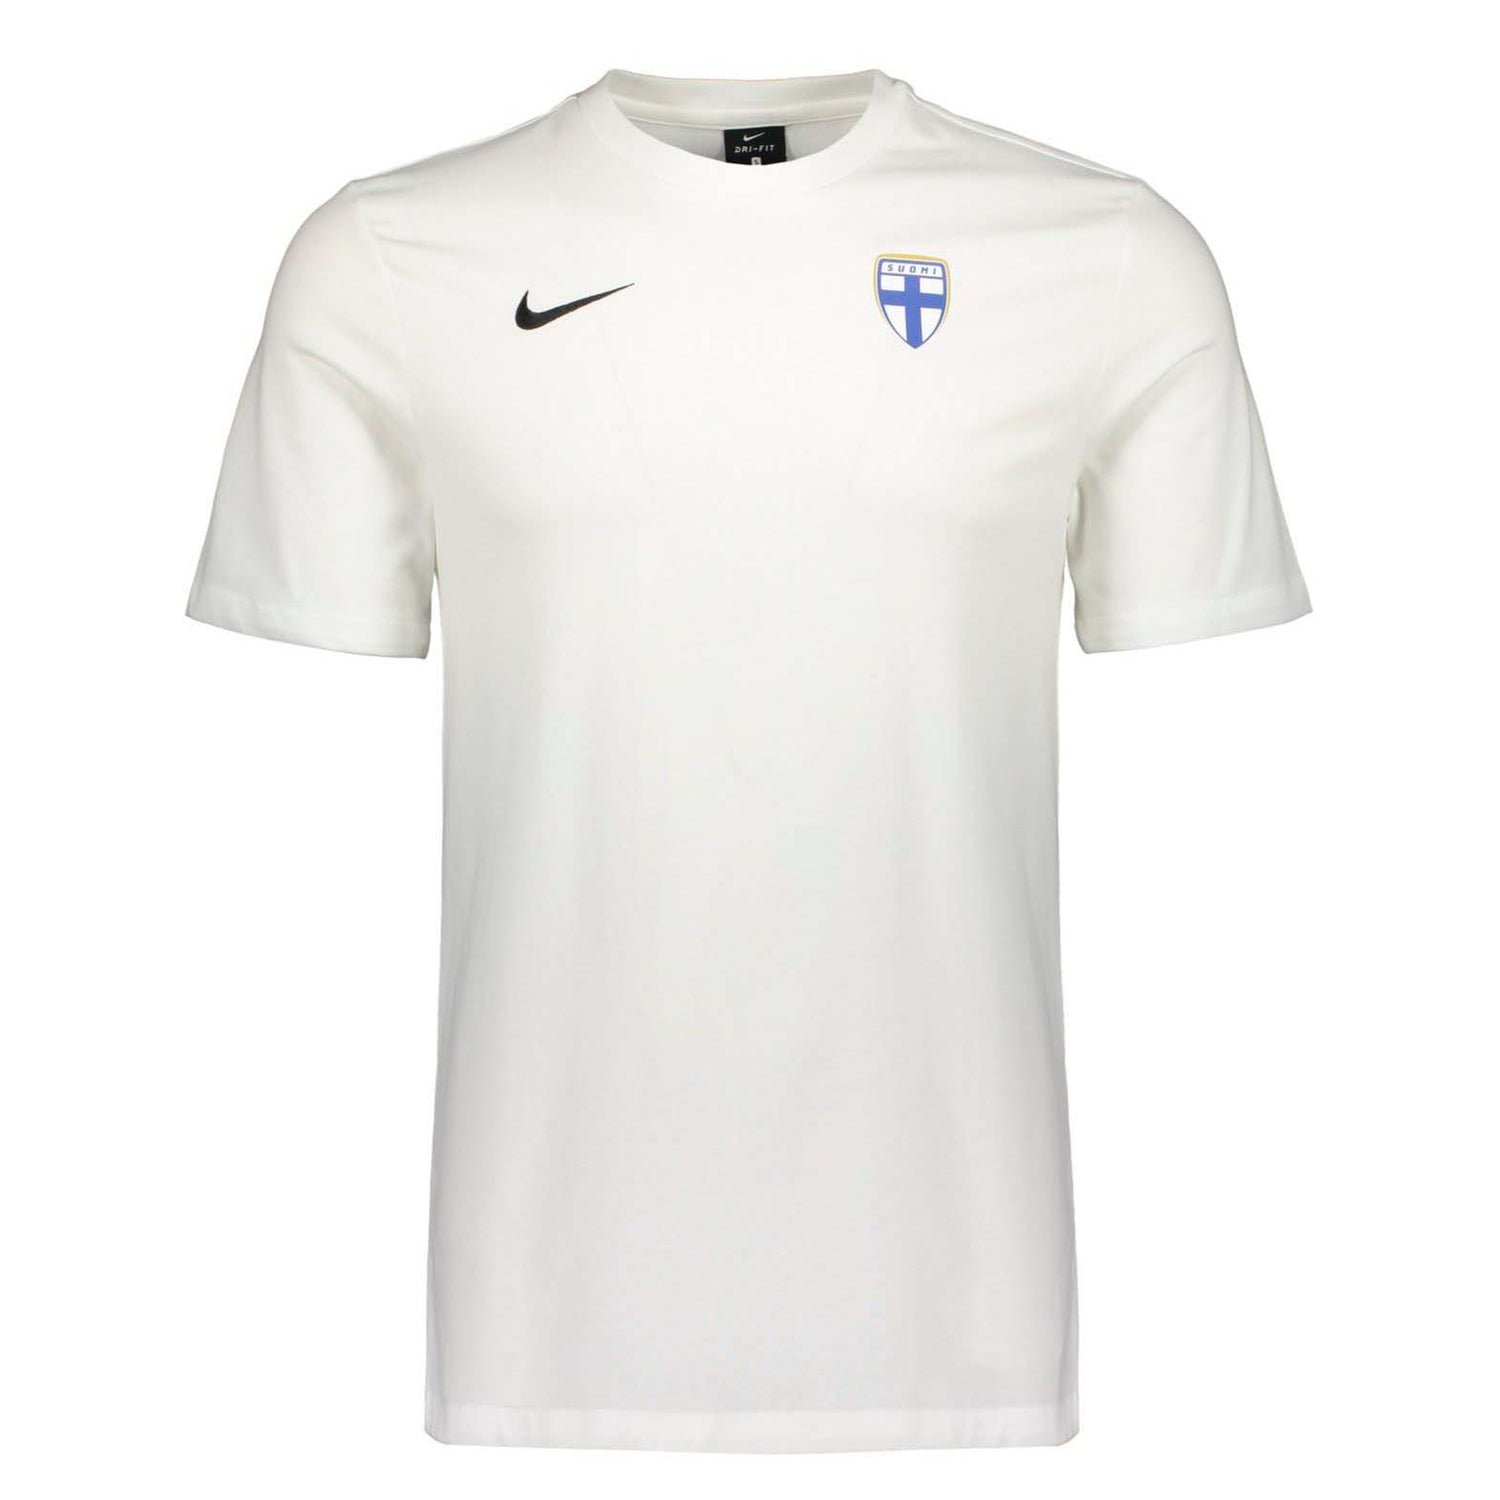 Valkoinen Niken laadukas T-paita Suomen maajoukkueen logolla.